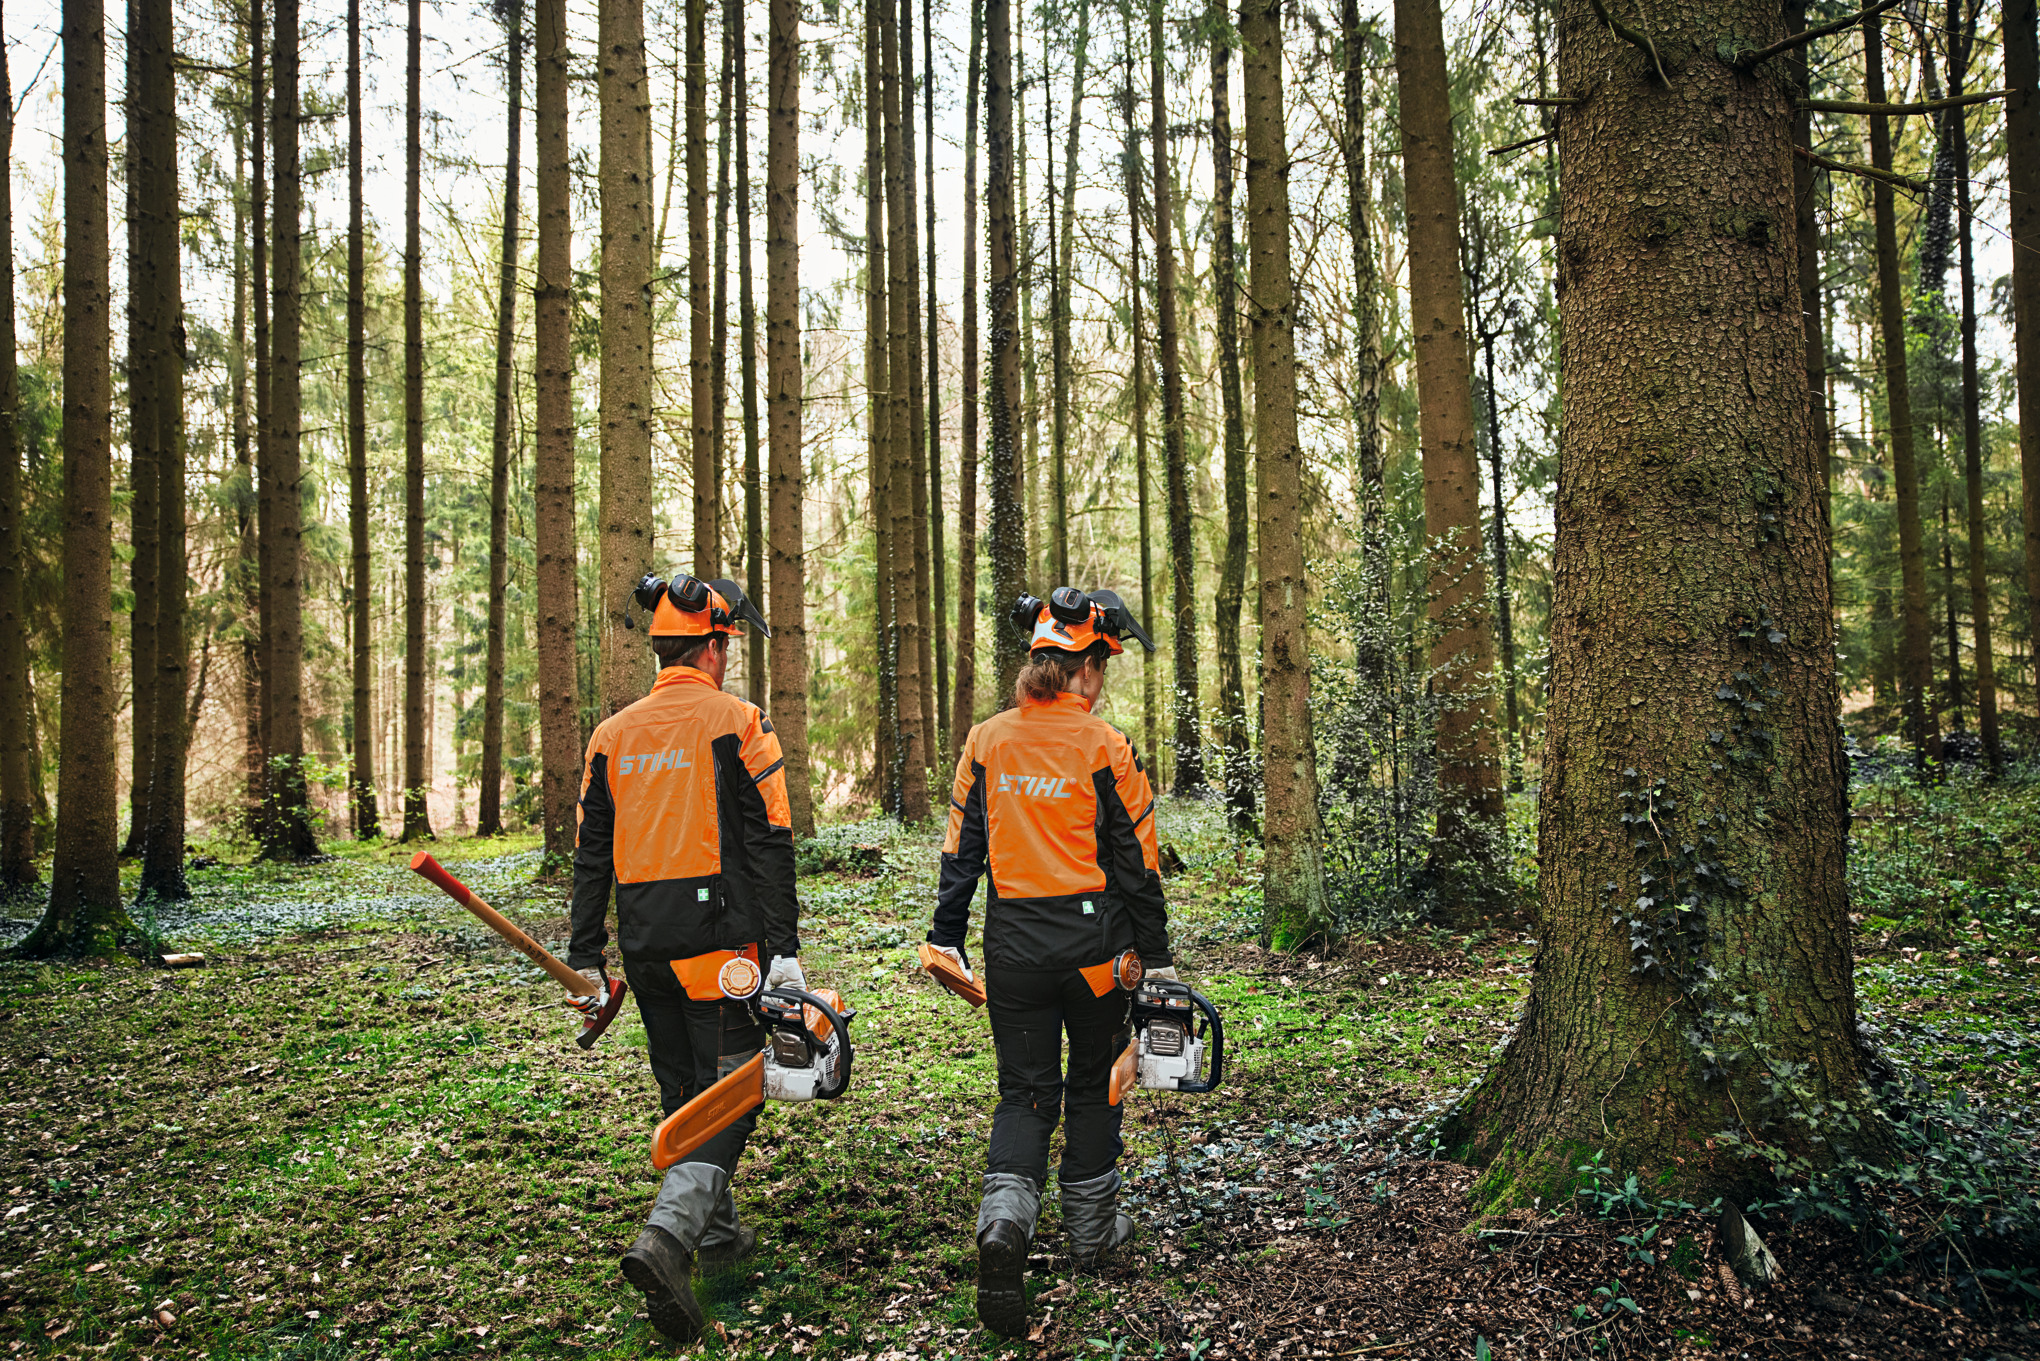 Δύο άτομα στο δάσος με προστατευτικό εξοπλισμό με μηχανοκίνητα αλυσοπρίονα και τσεκούρι.